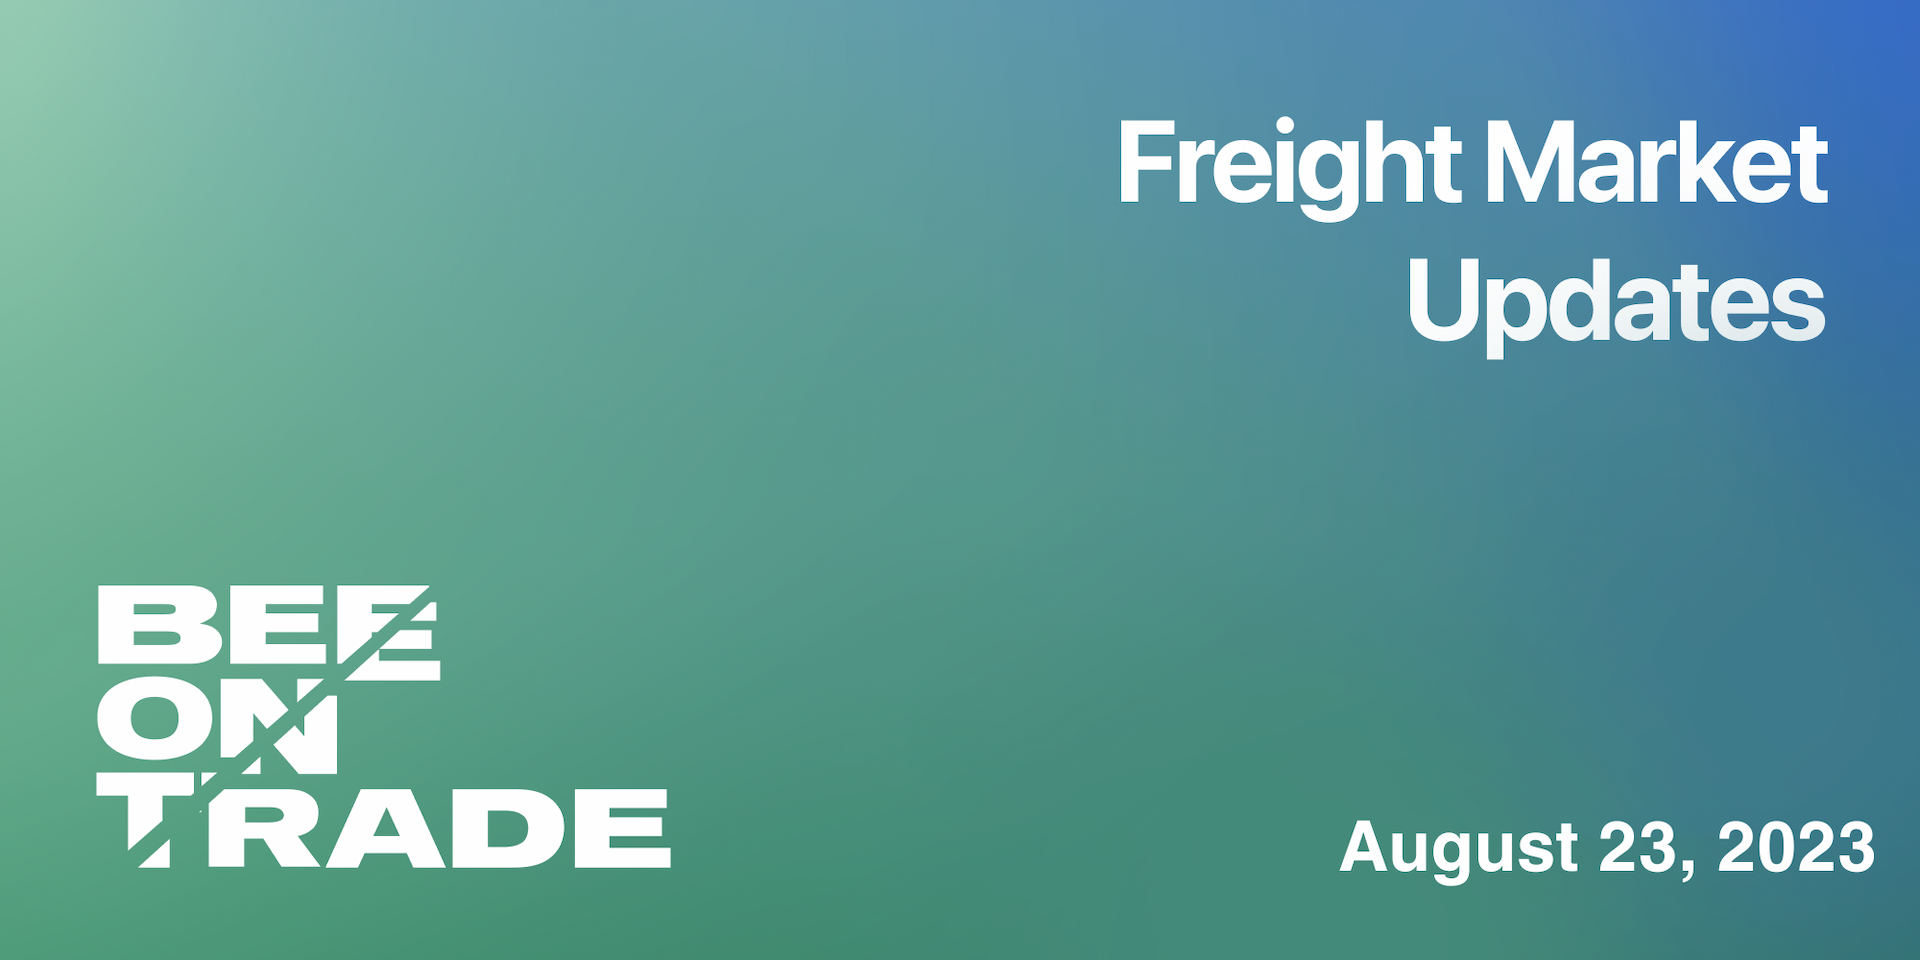 Freight market update - 23 August 2023